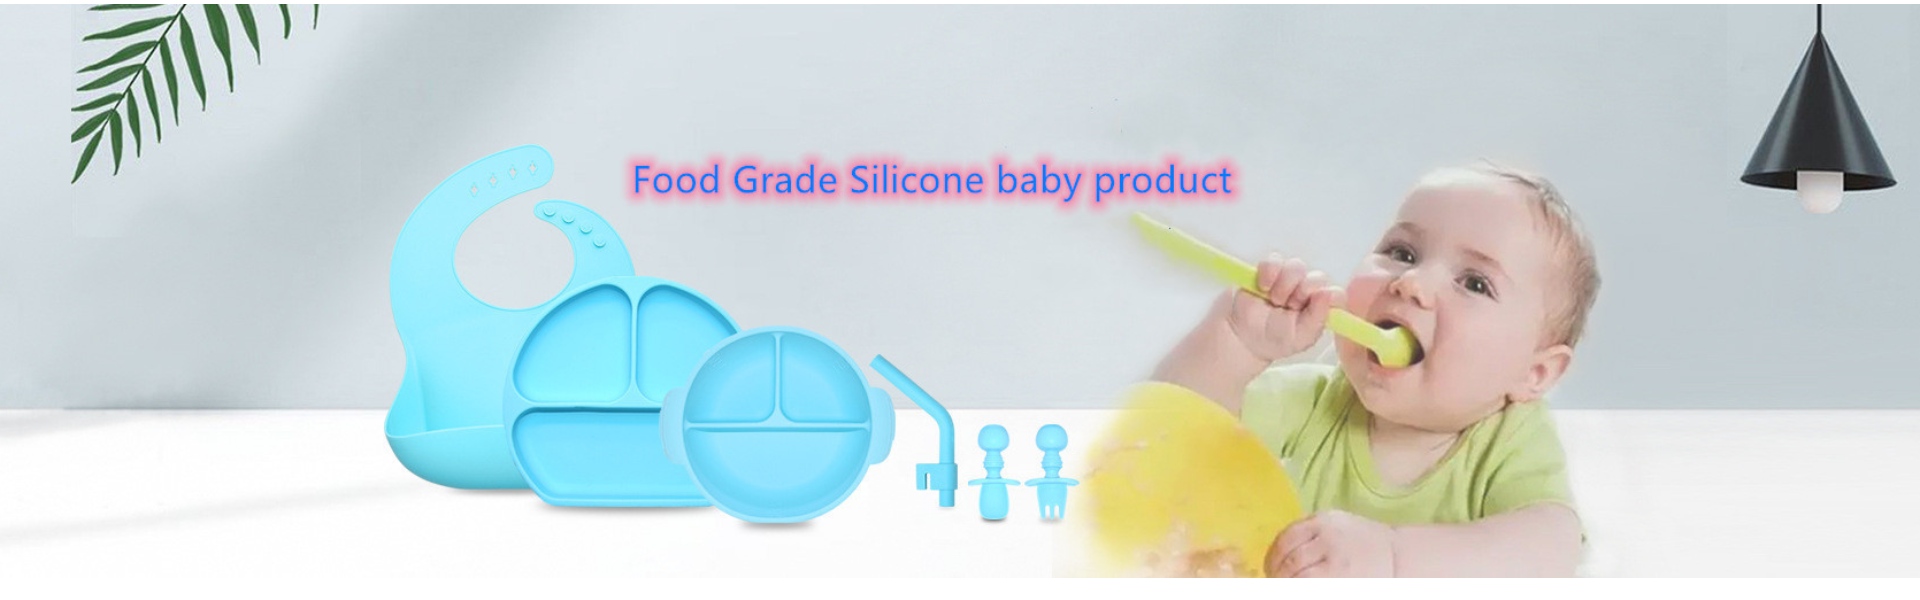 Utensilios de cocina de silicona, moldes de hielo de silicona, juguetes para bebés de silicona,Huizhou Calipolo accessory Ltd